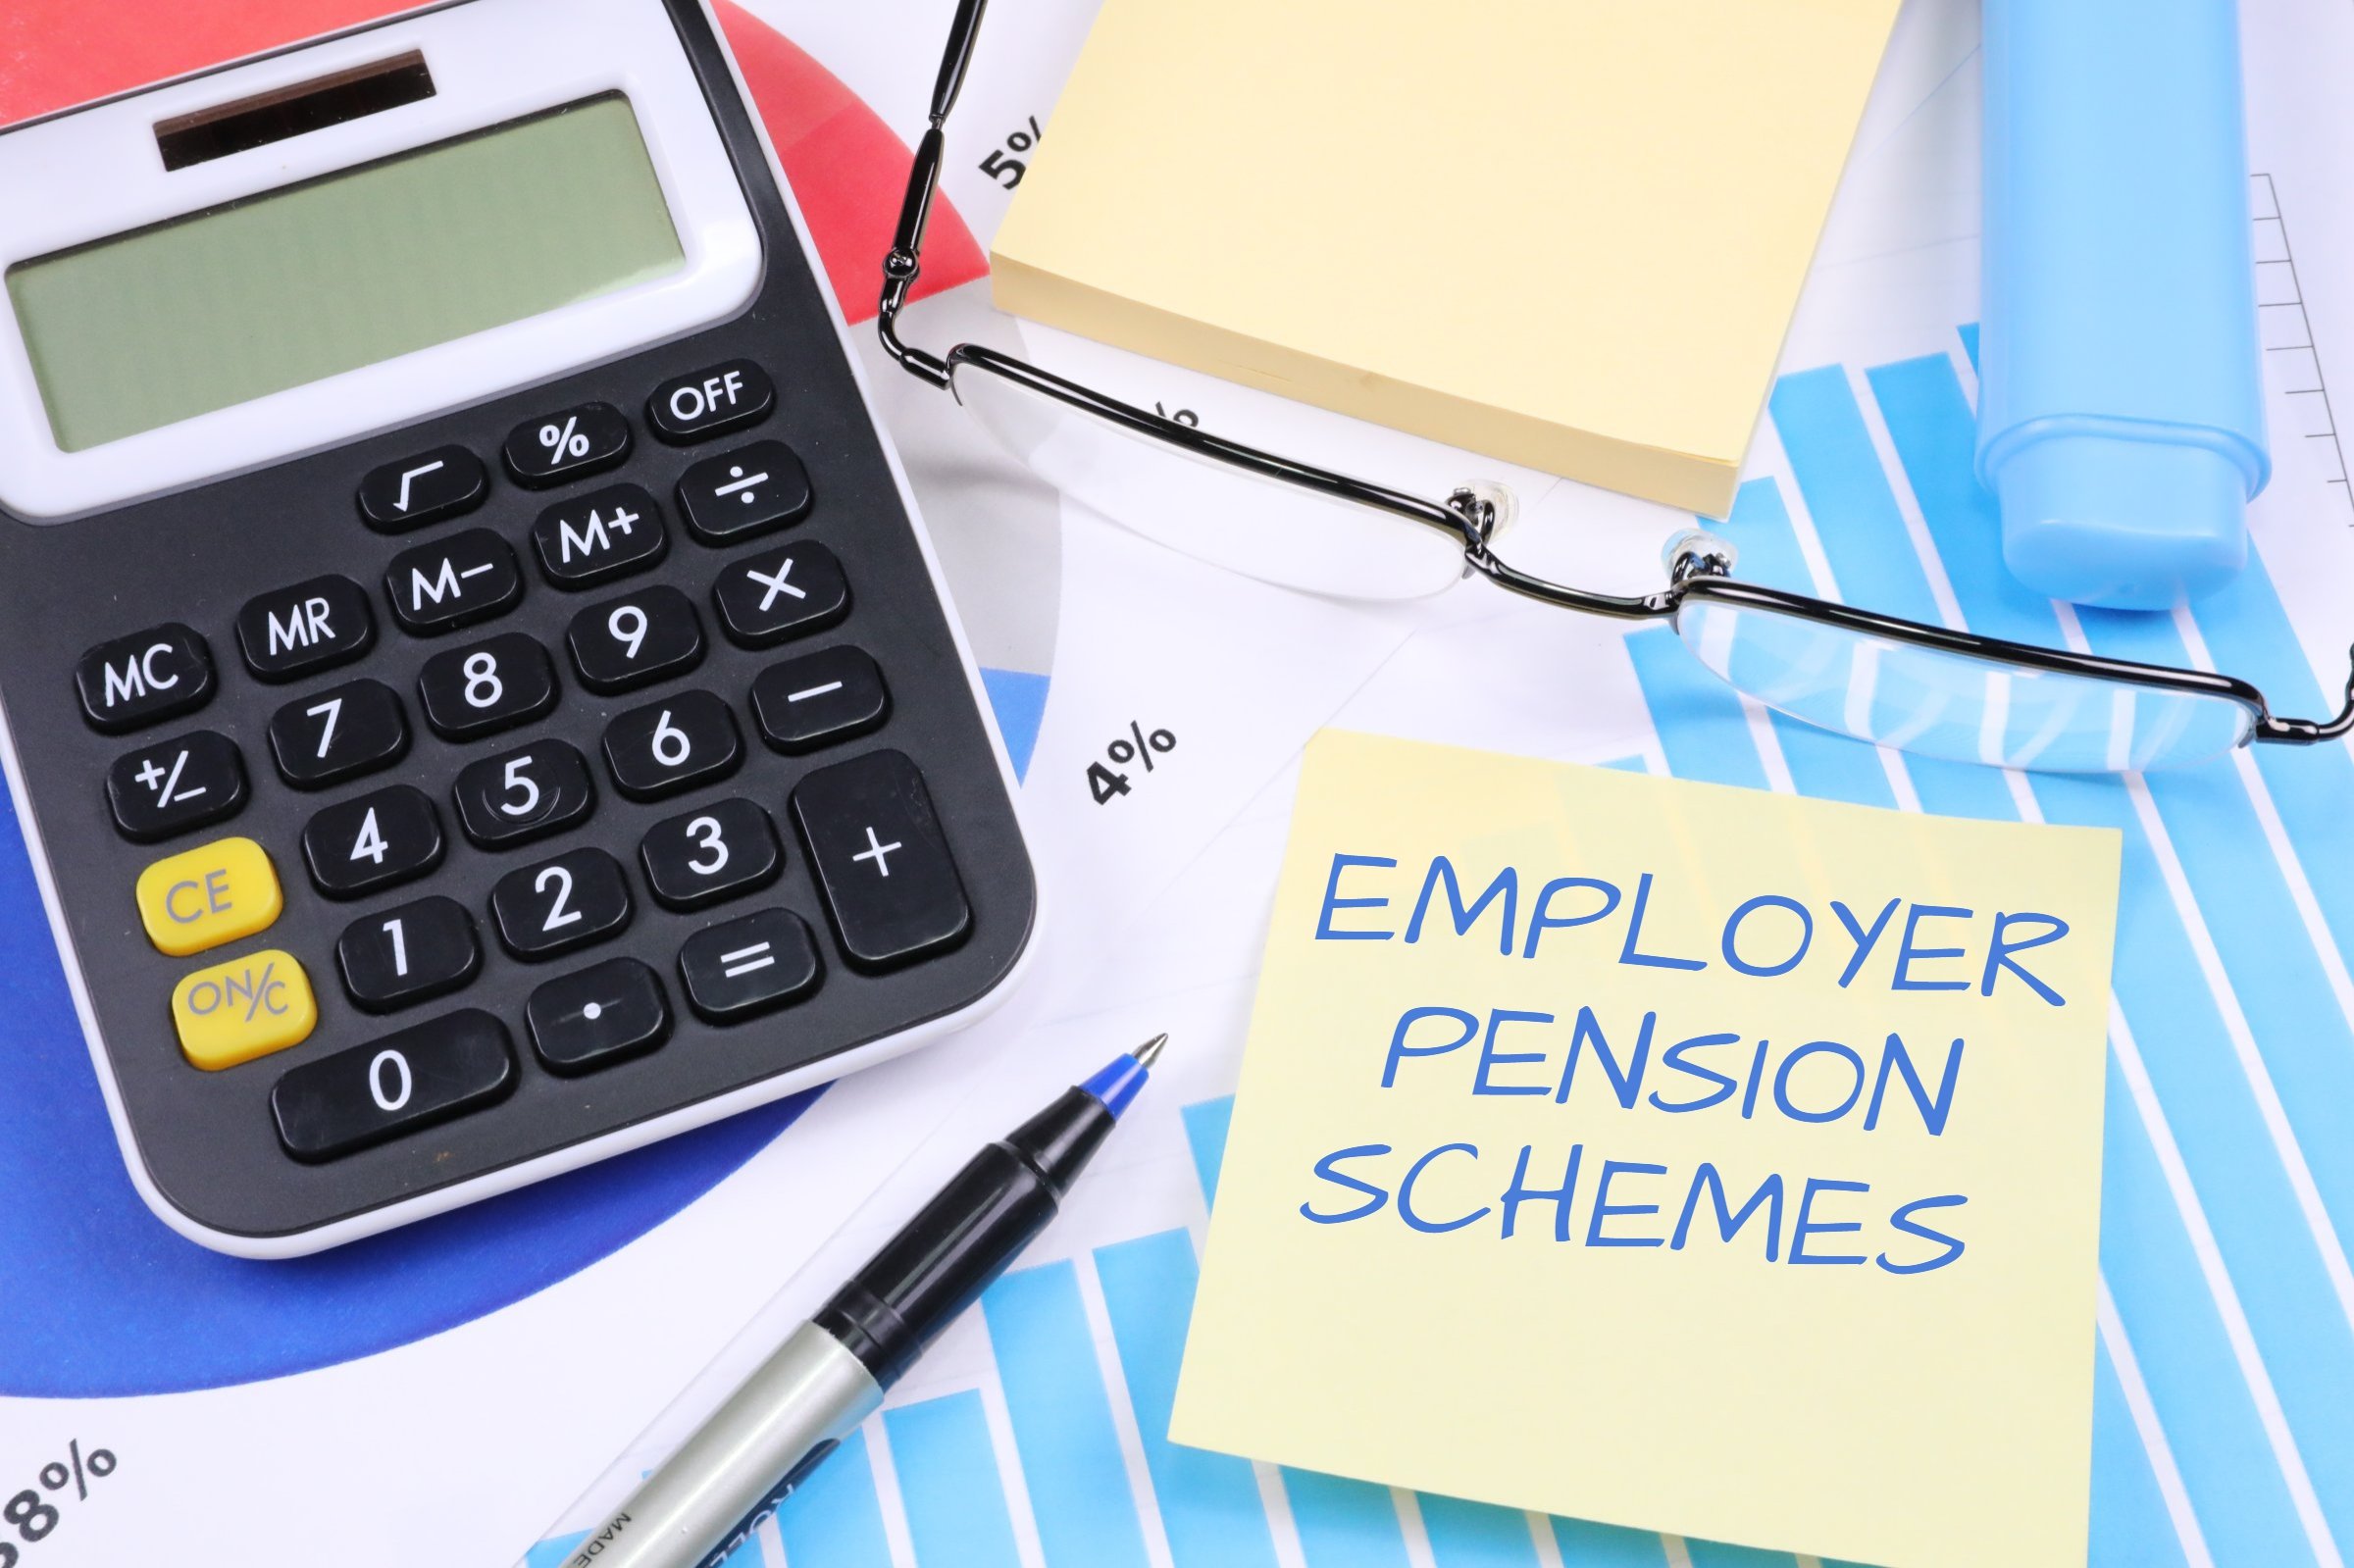 Employer Pension Schemes